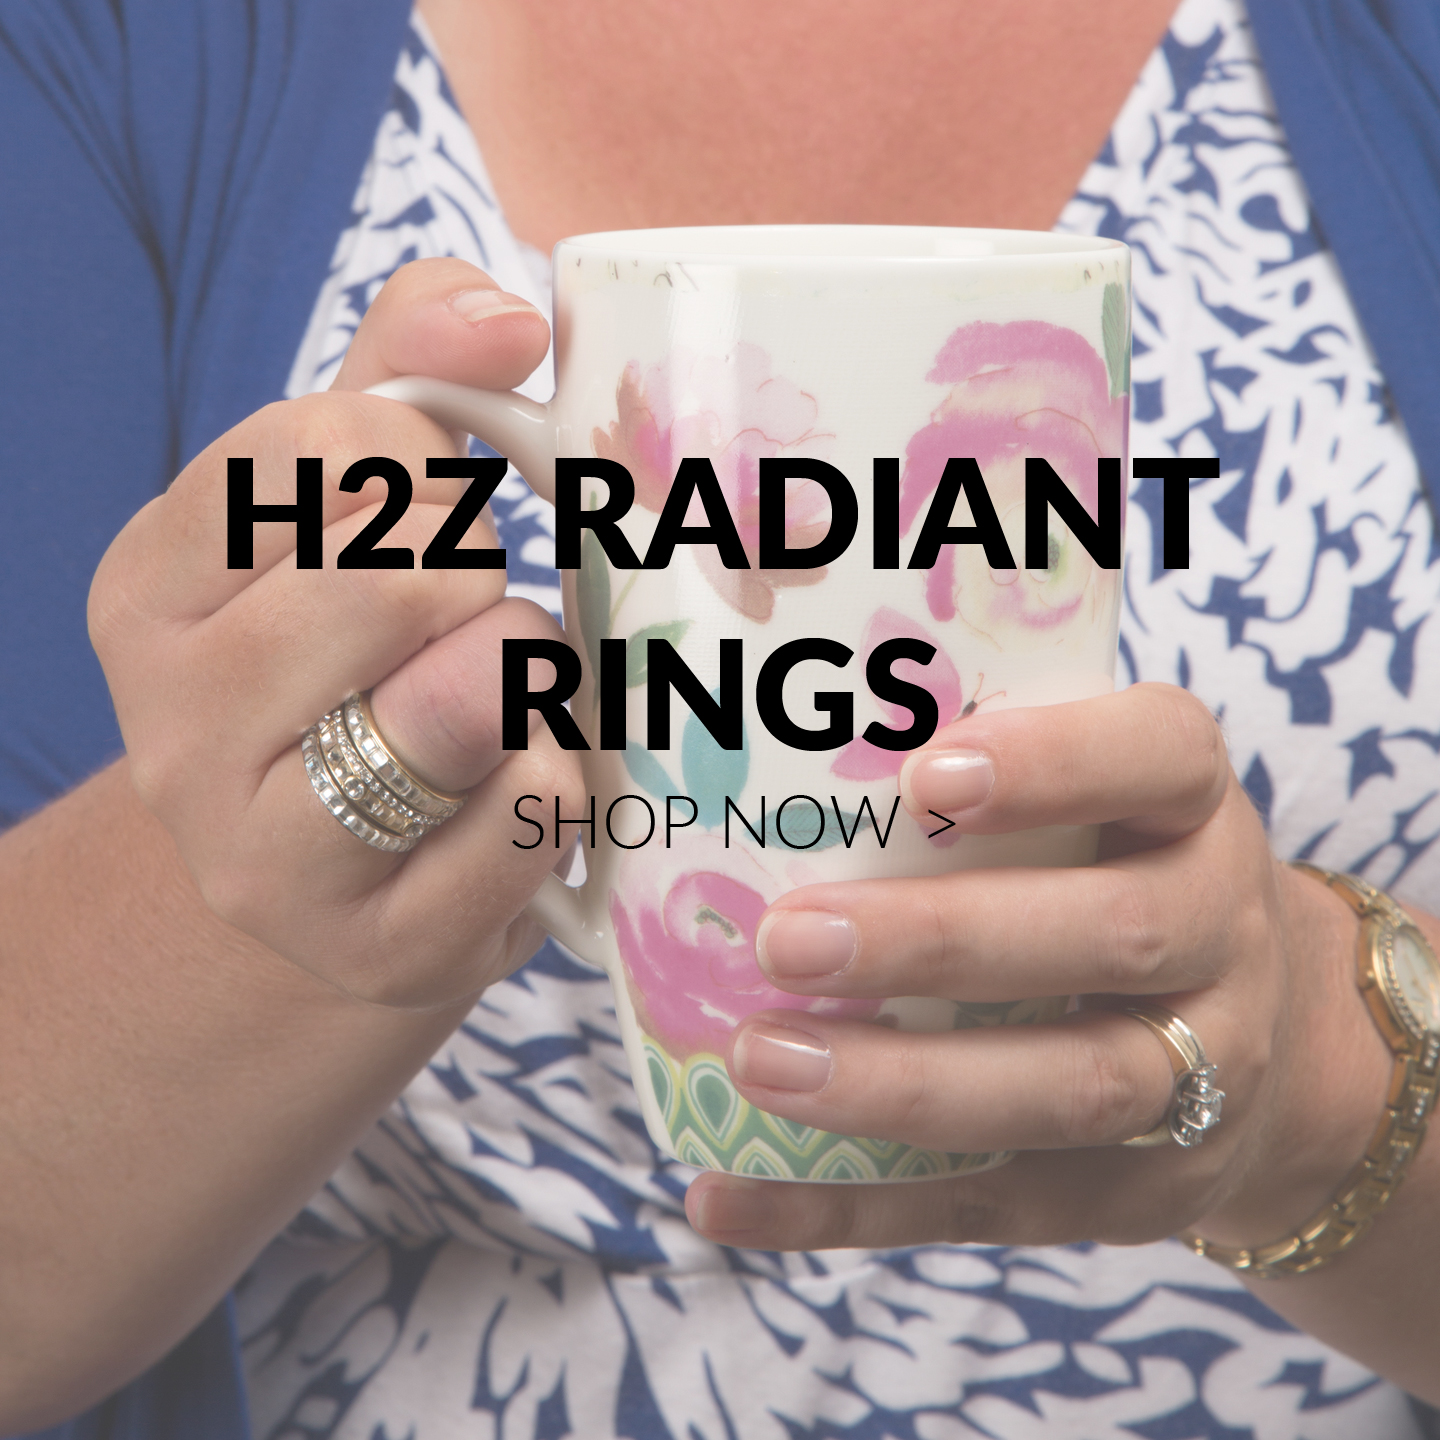 H2Z Radiant Rings